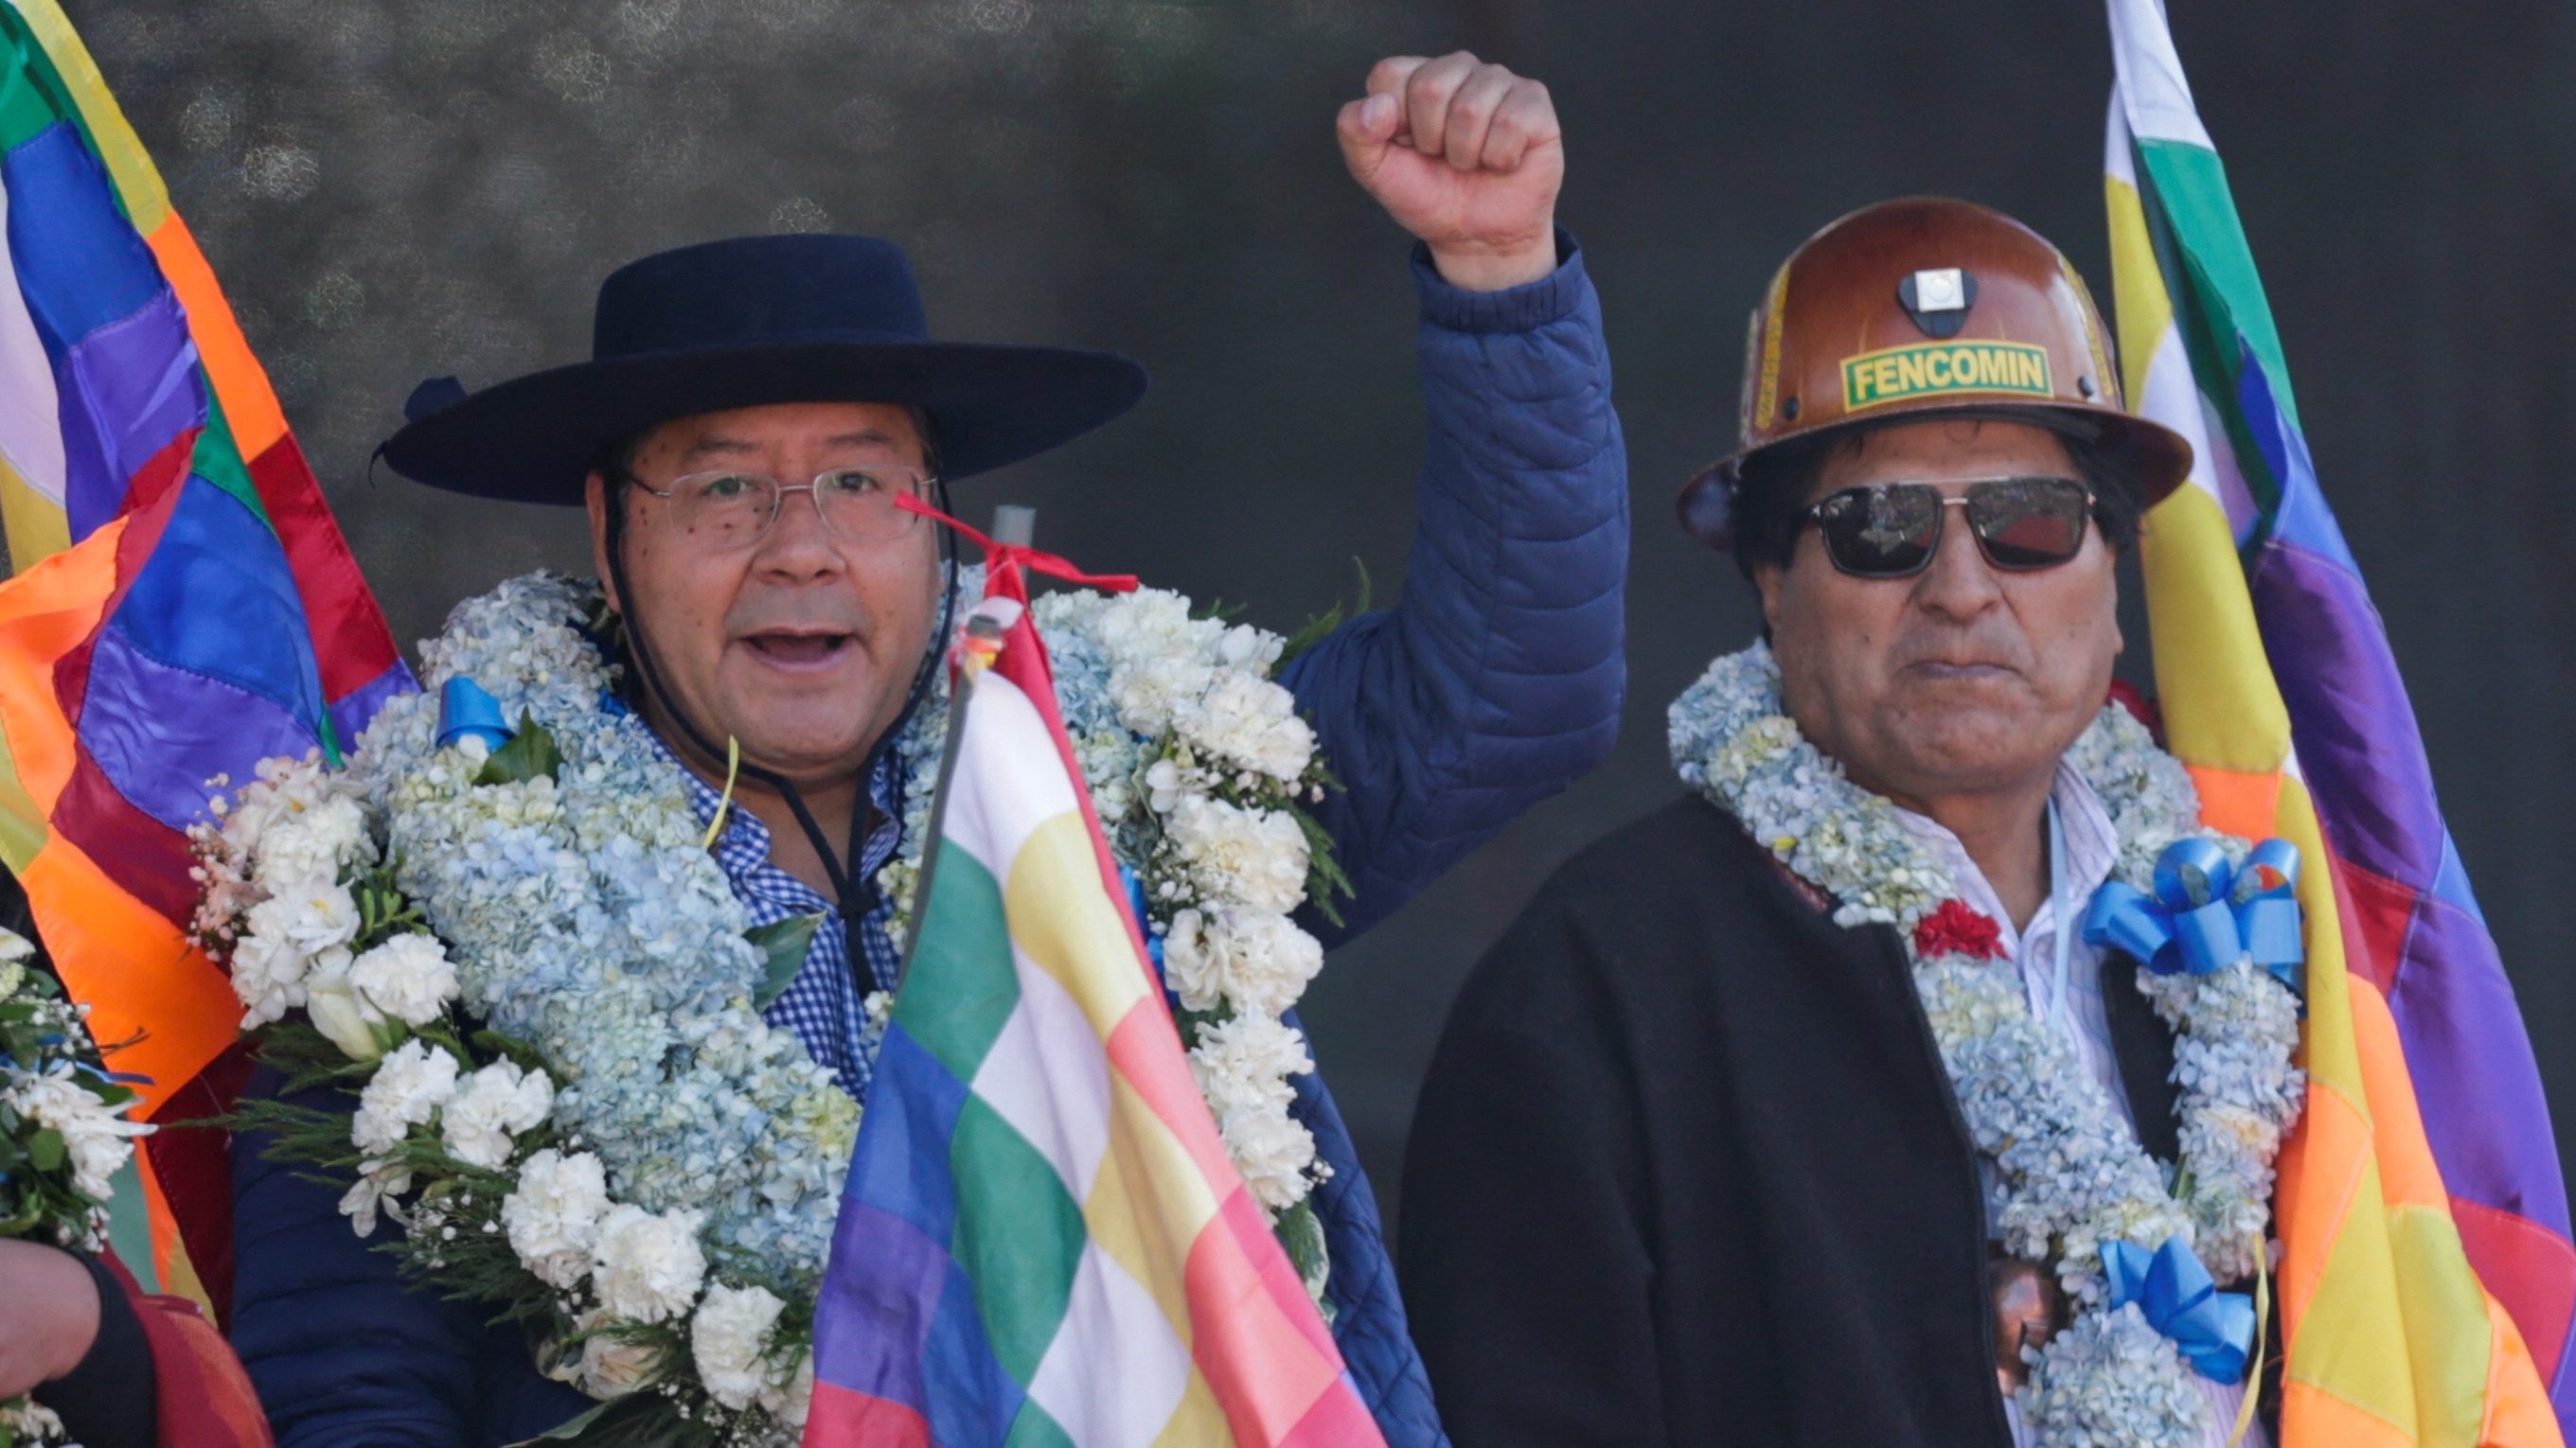 El presidente de Bolivia, Luis Arce, hace un gesto junto al ex presidente Evo Morales mientras marchan con simpatizantes del partido boliviano MAS, trabajadores y cocaleros para expresar su apoyo al gobierno de Arce, en La Paz, Bolivia, el 25 de agosto de 2022. REUTERS/Manuel Claure